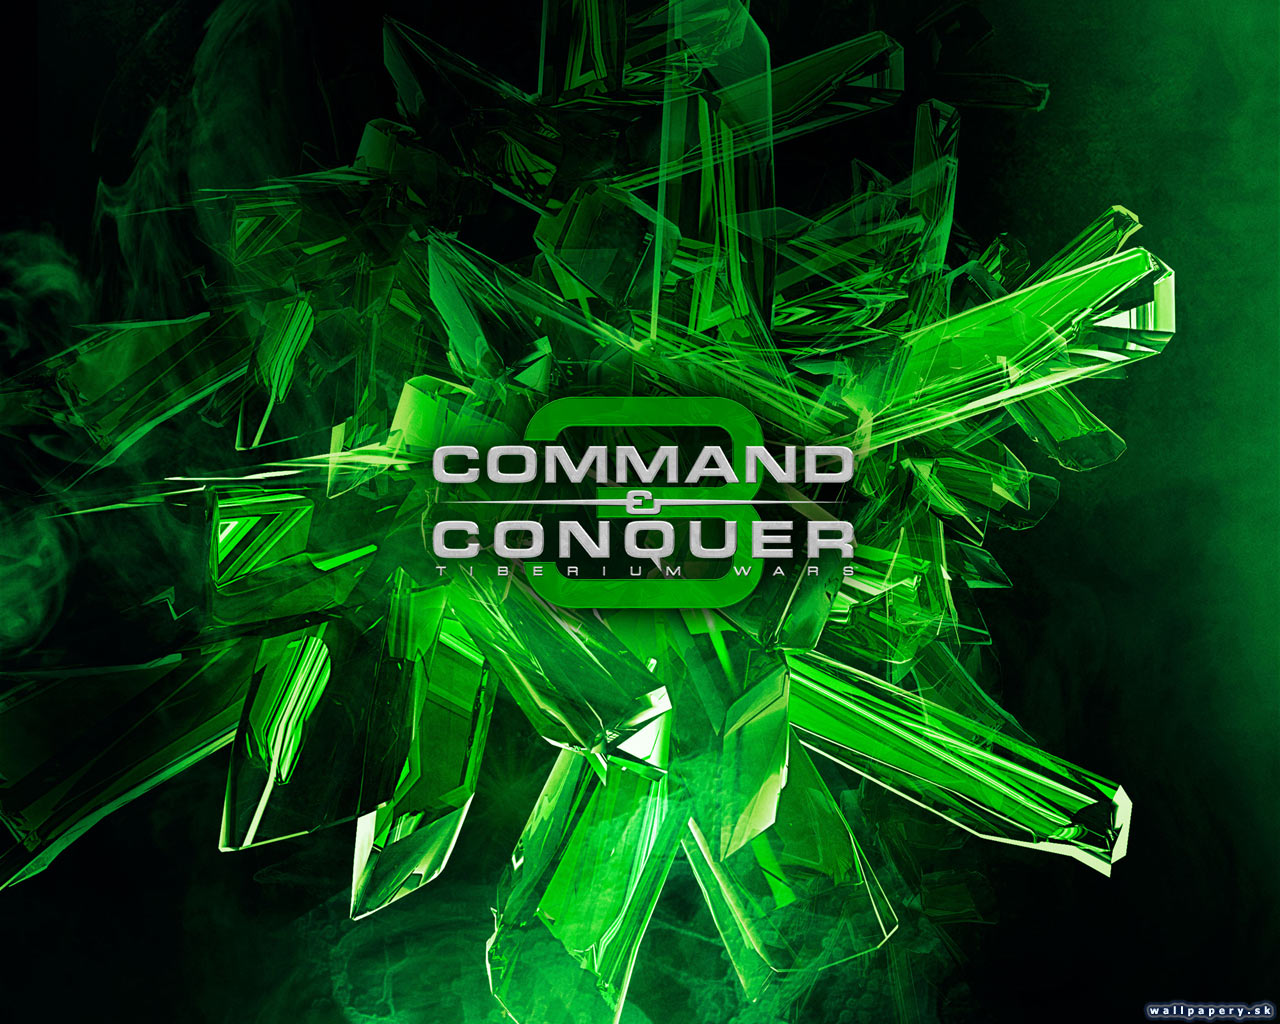 Command & Conquer 3: Tiberium Wars - wallpaper 23